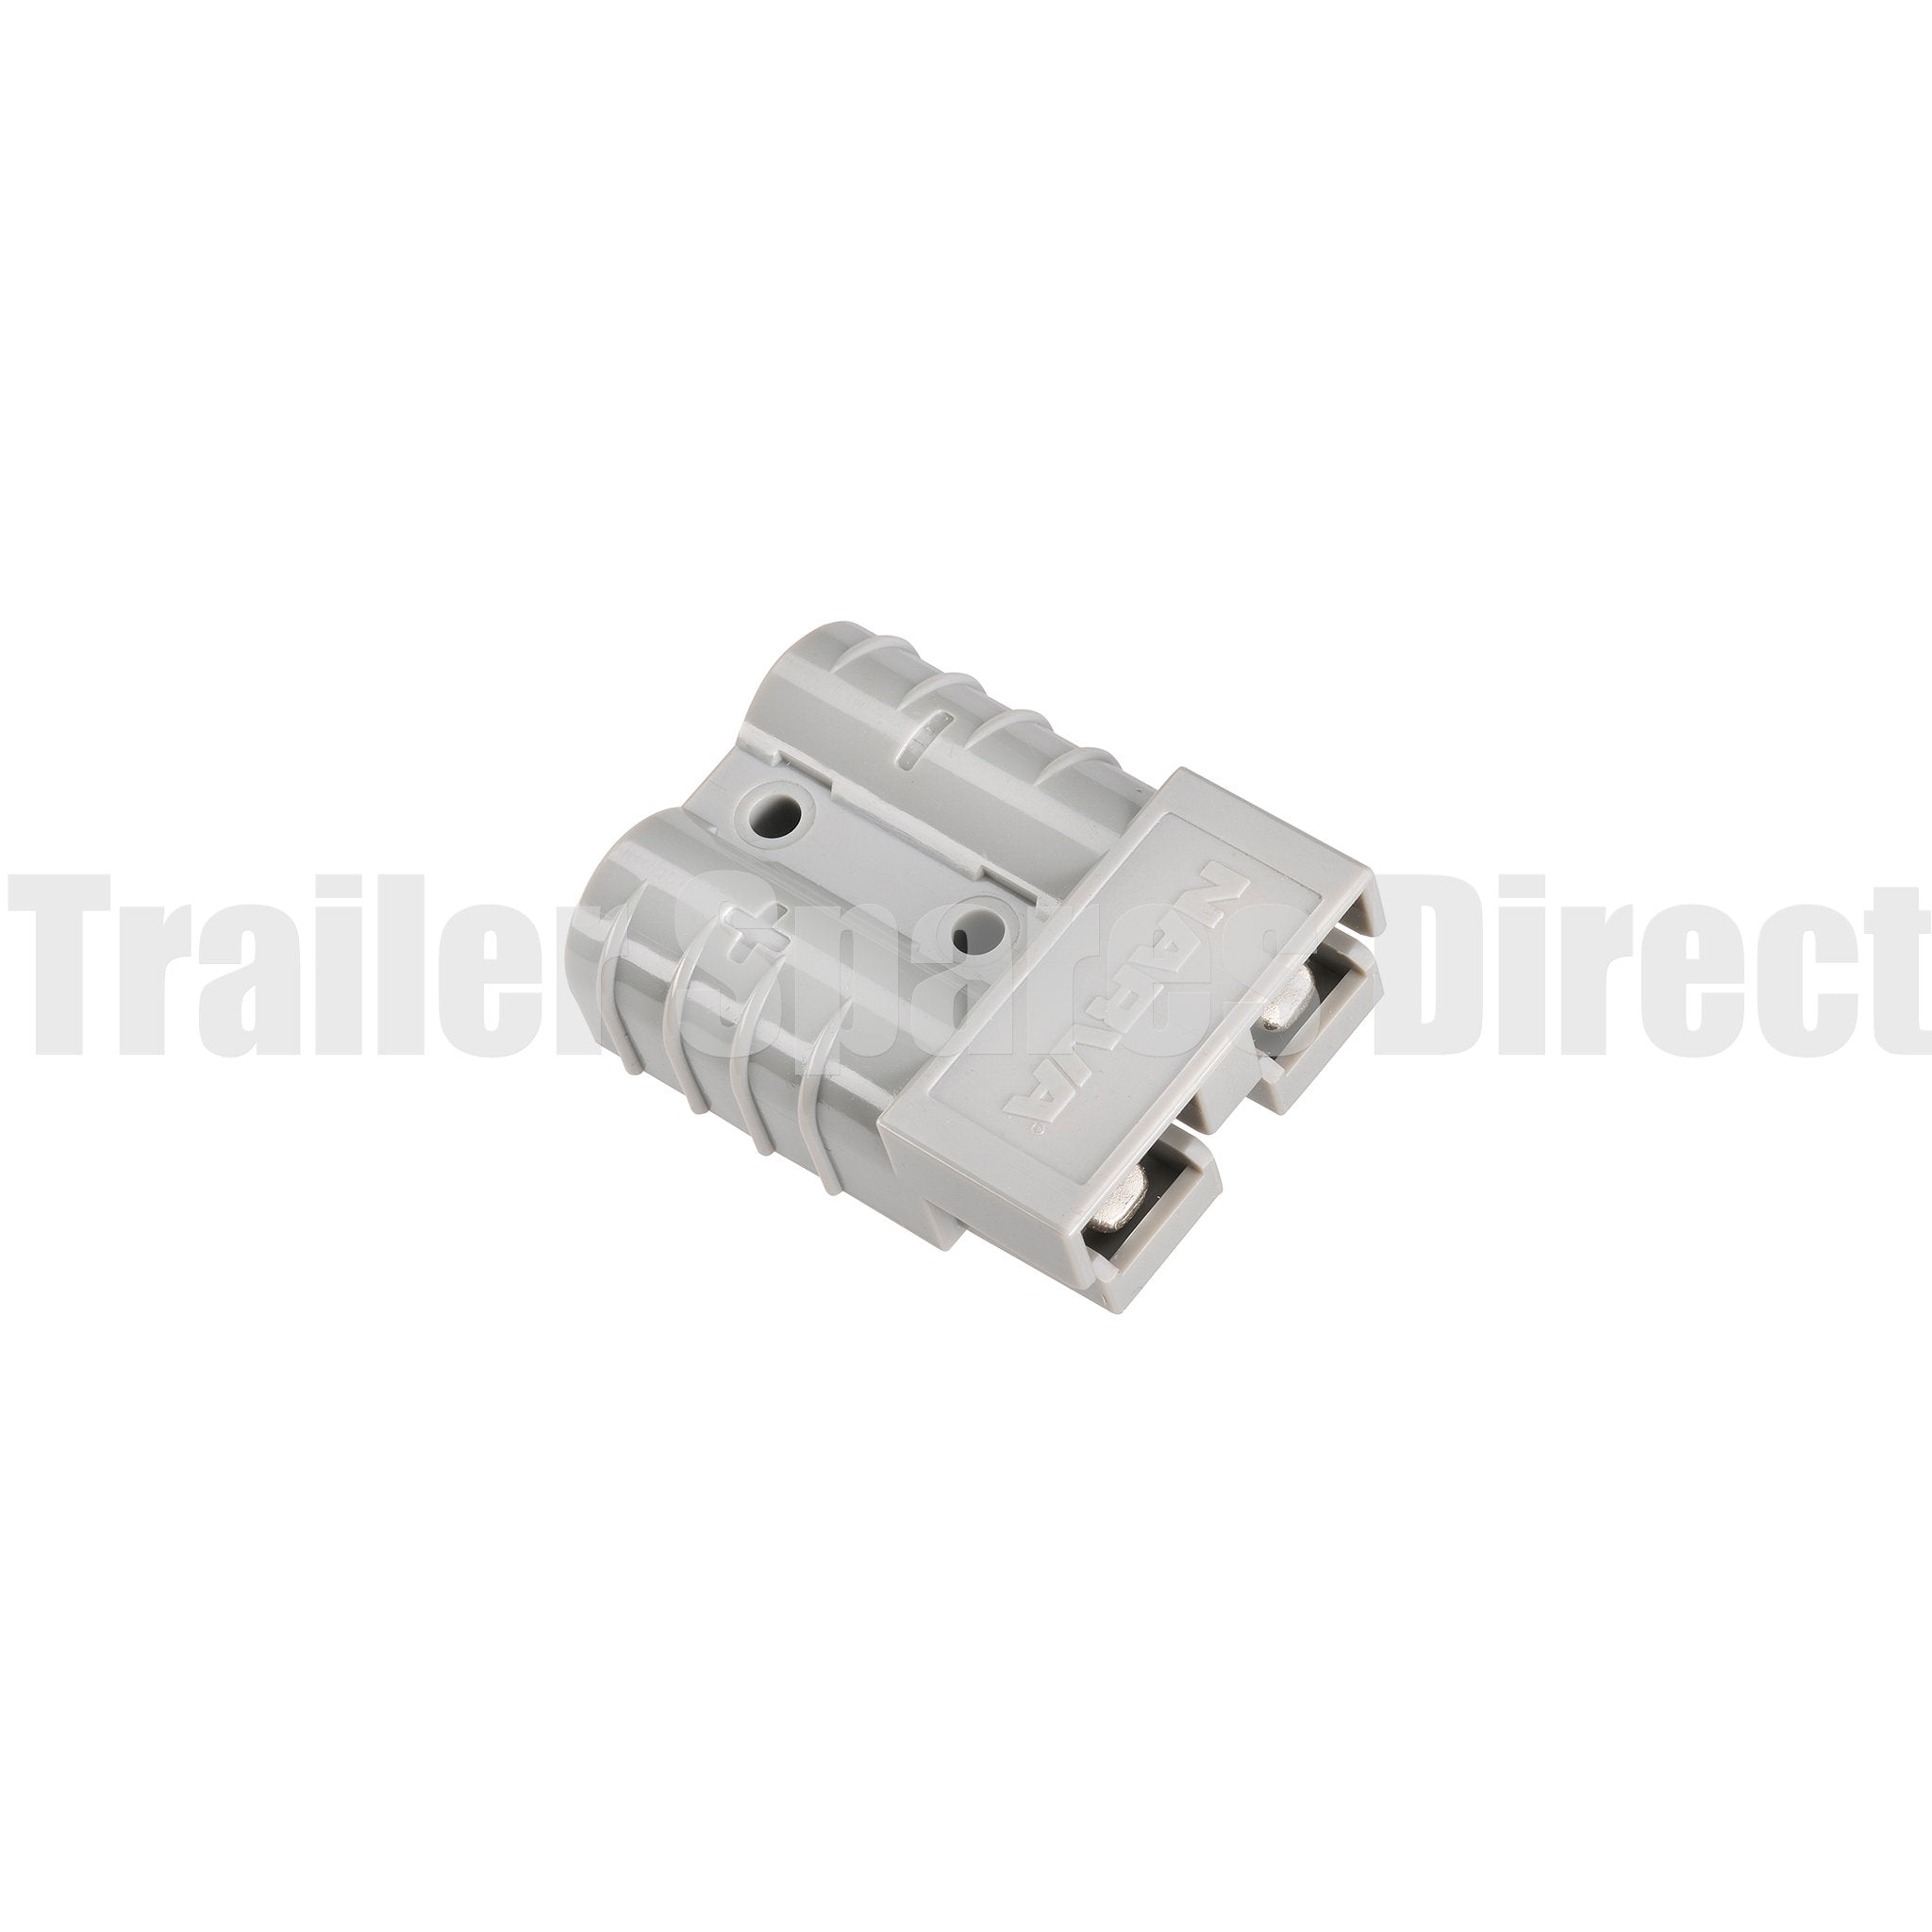 narva grey connector - anderson-type plug